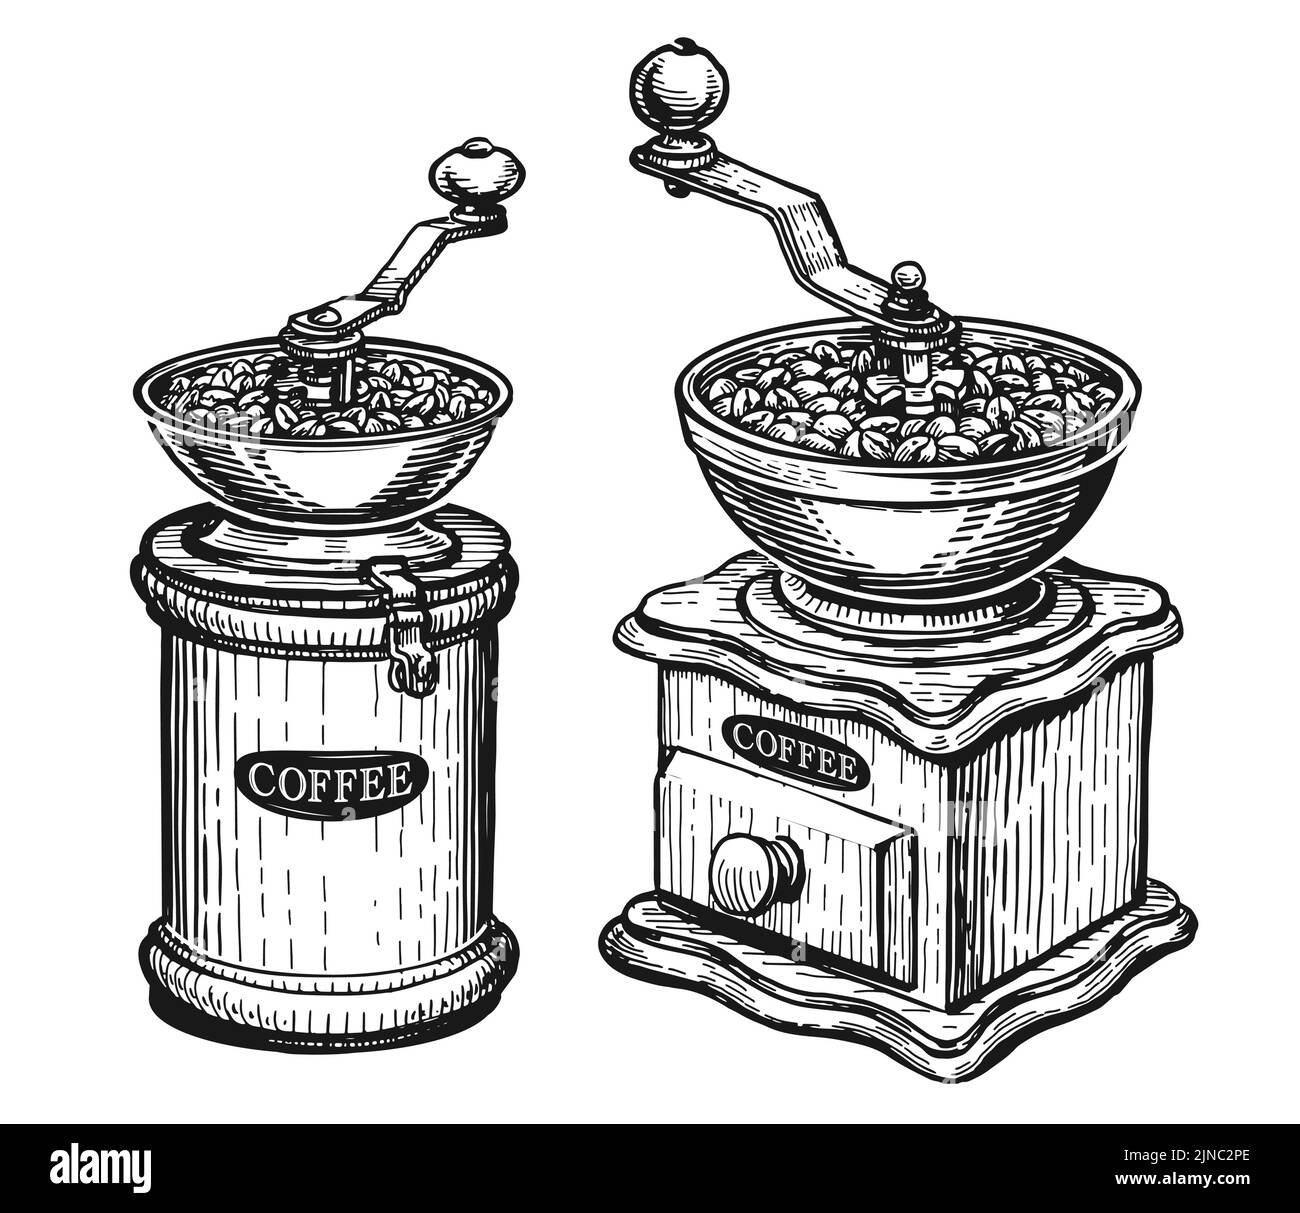 Molinillo de café manual retro o boceto de molinillo. Concepto de cafetería. Ilustración vectorial en estilo de grabado vintage Ilustración del Vector